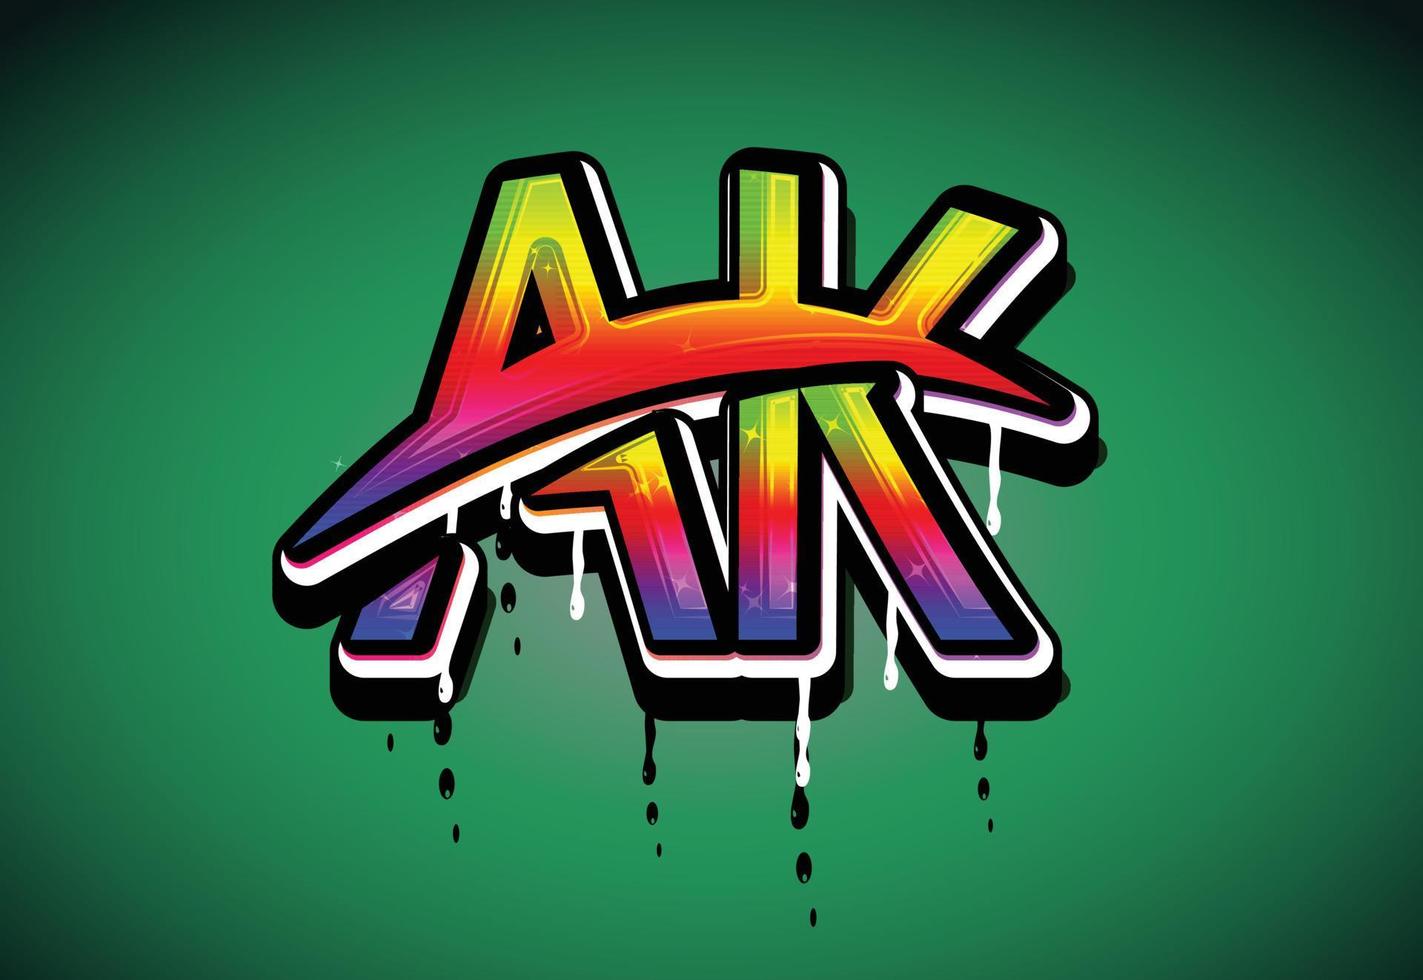 AK Letter Swash logo vector